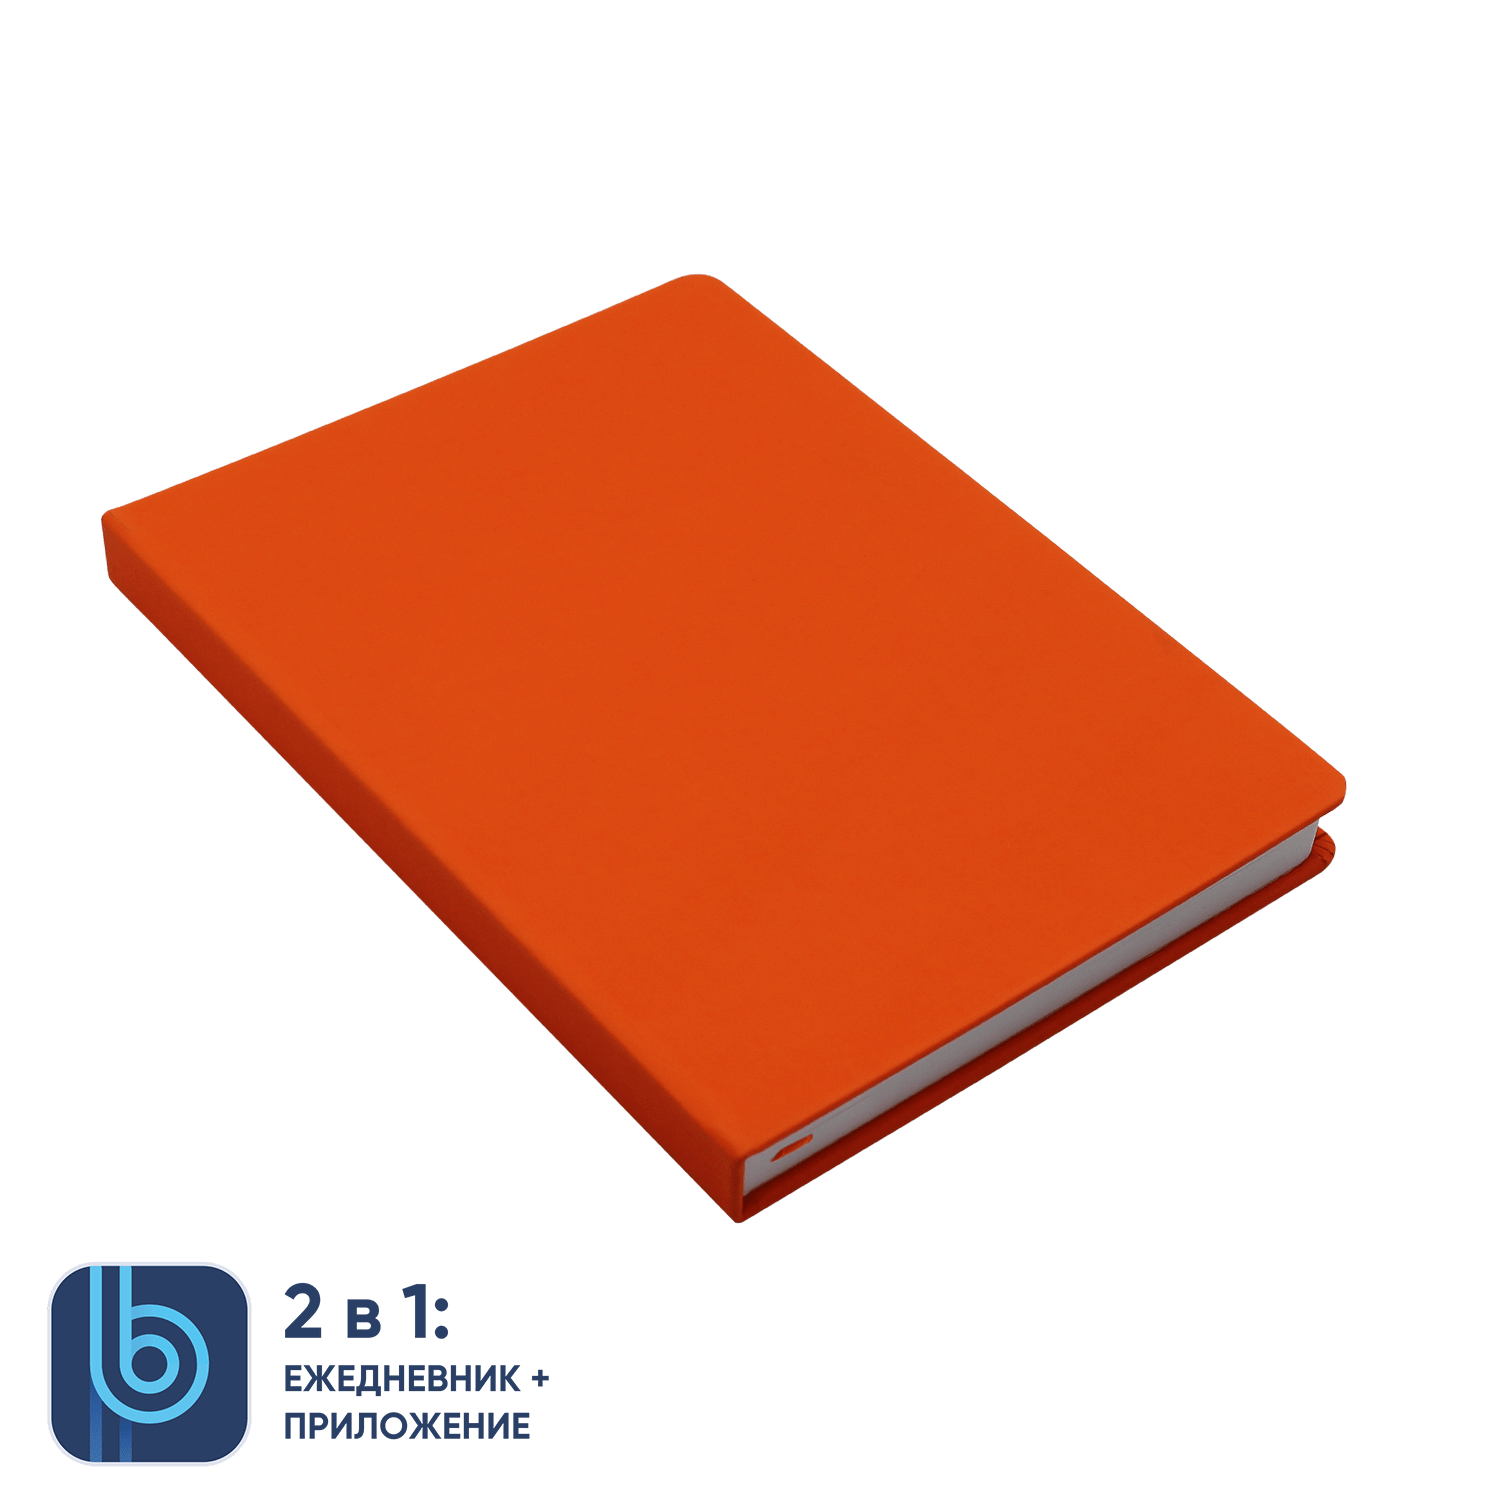 Ежедневник Bplanner.02 orange, оранжевый